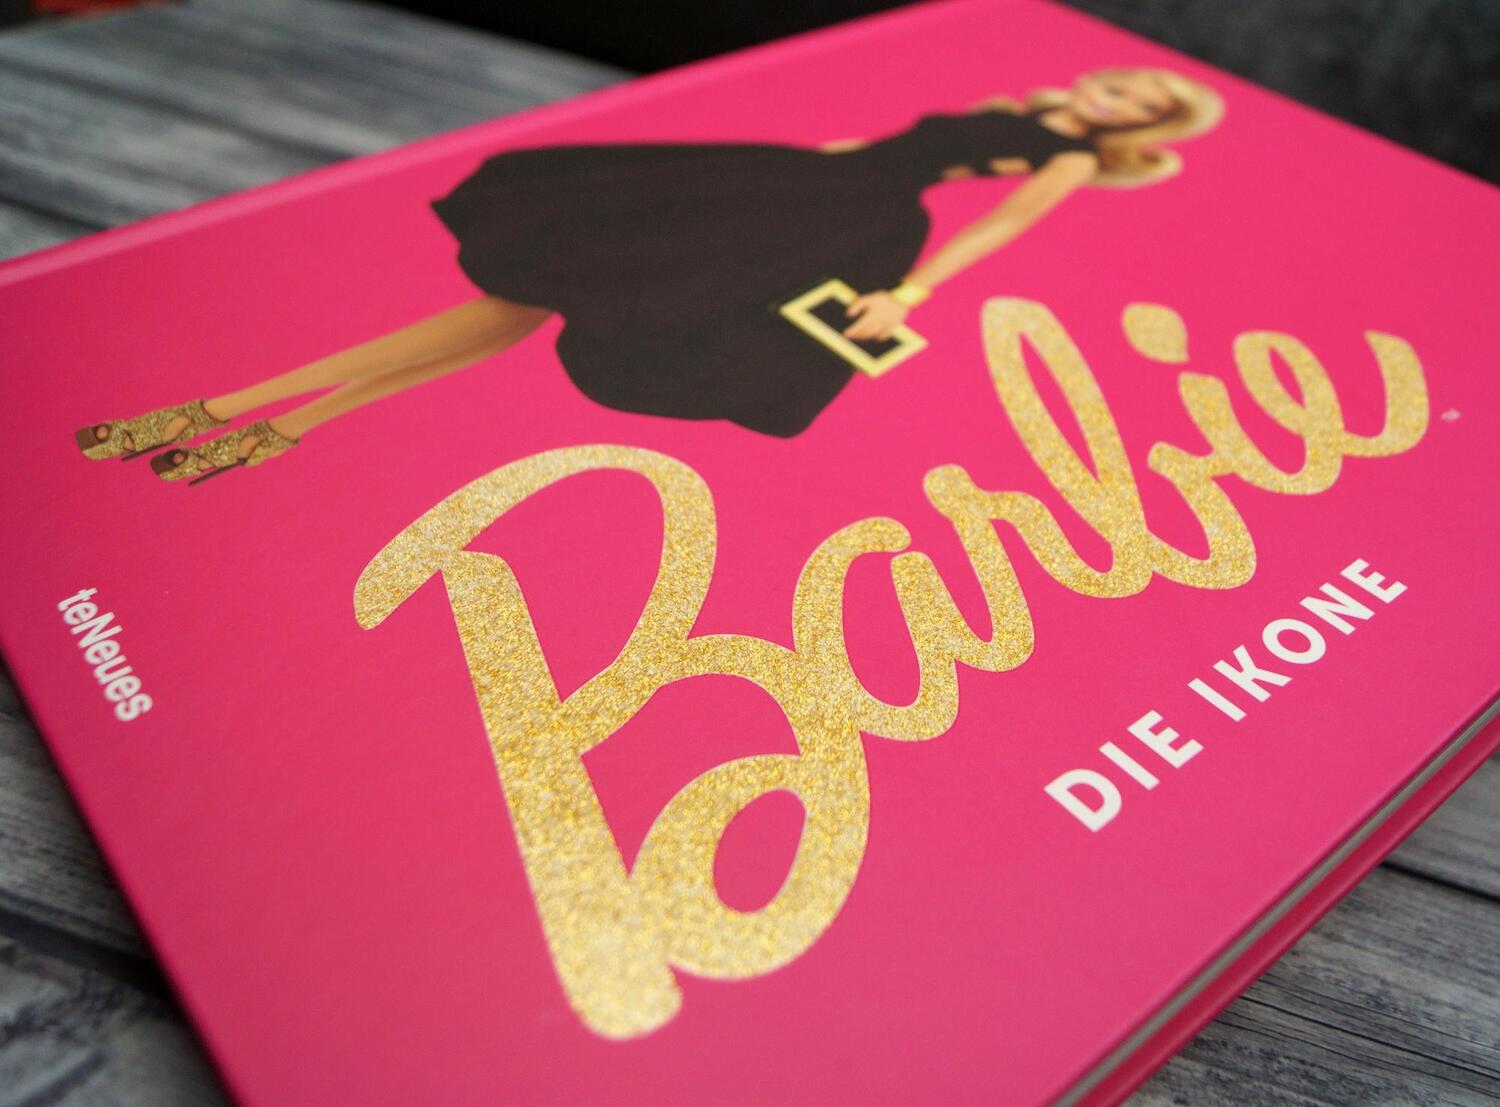 Bild: 9783961716128 | Barbie | Die Ikone | Massimiliano Capella | Buch | 240 S. | Deutsch